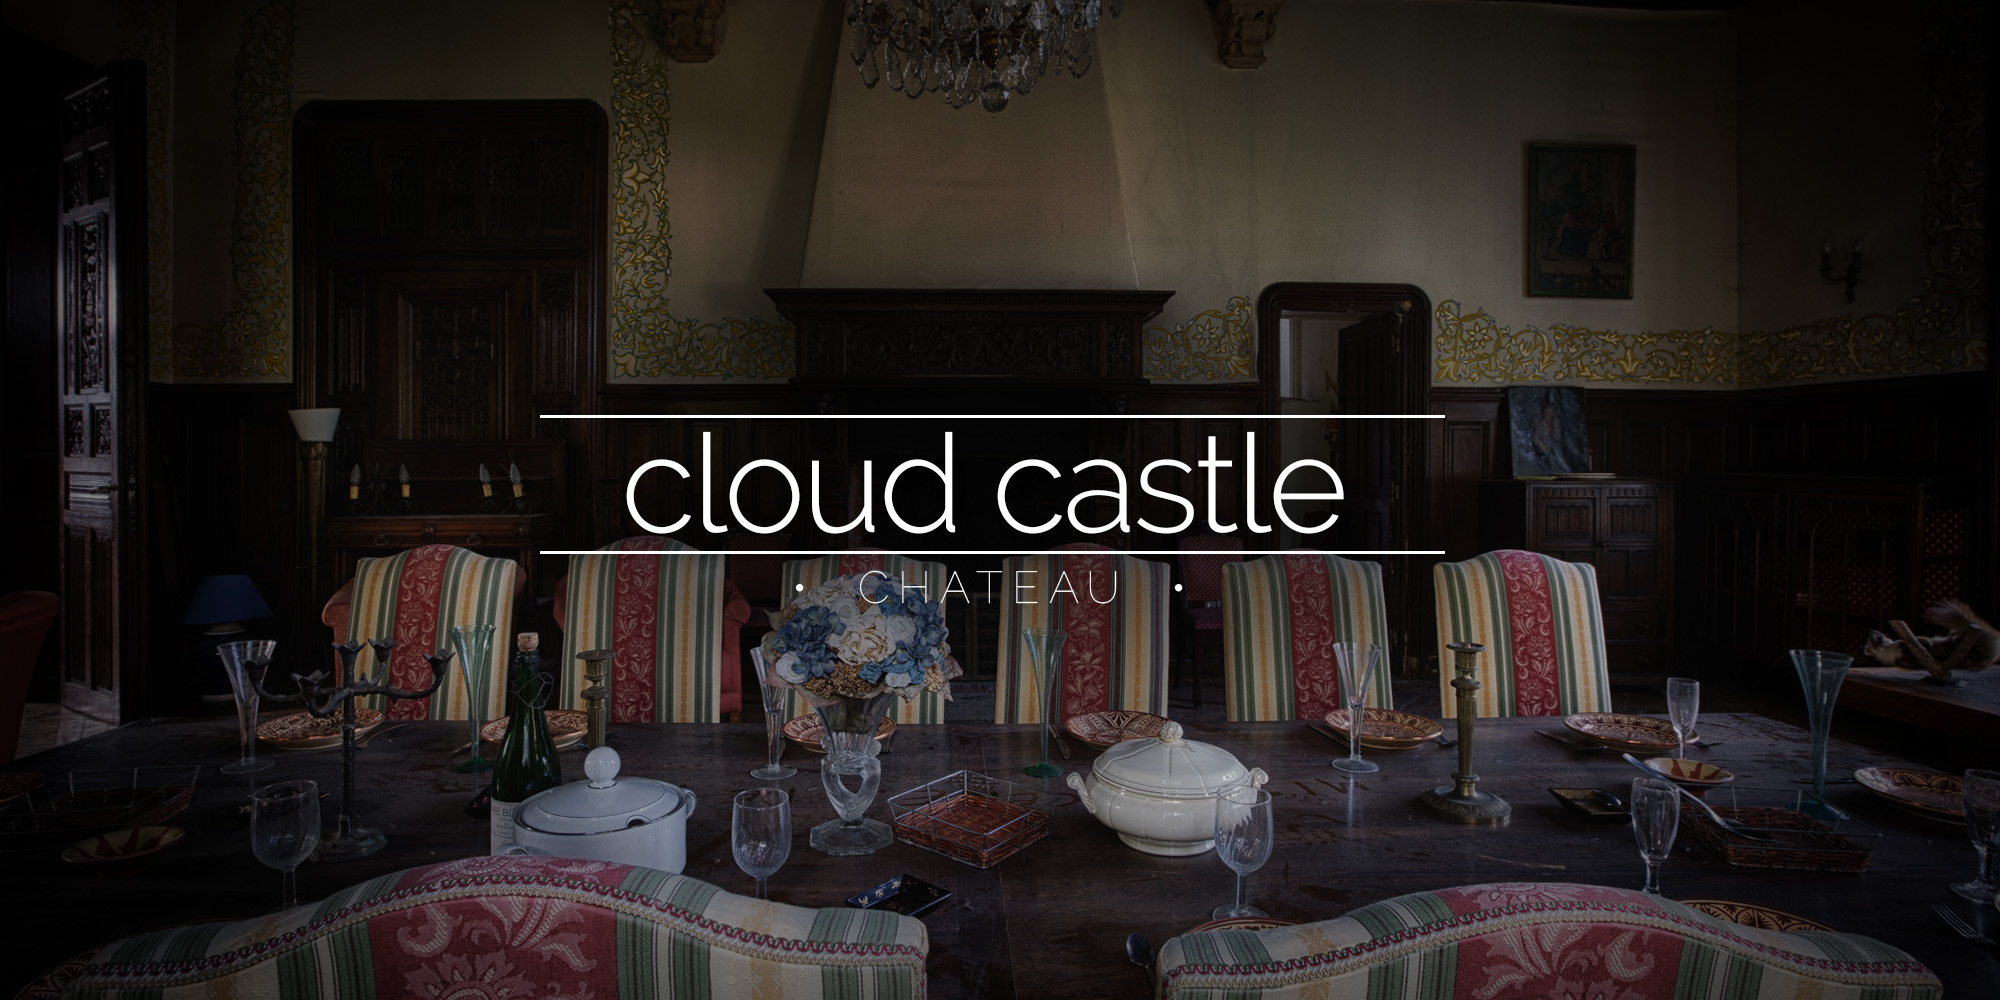 Château Sous Les Nuages - the Castle in the Clouds